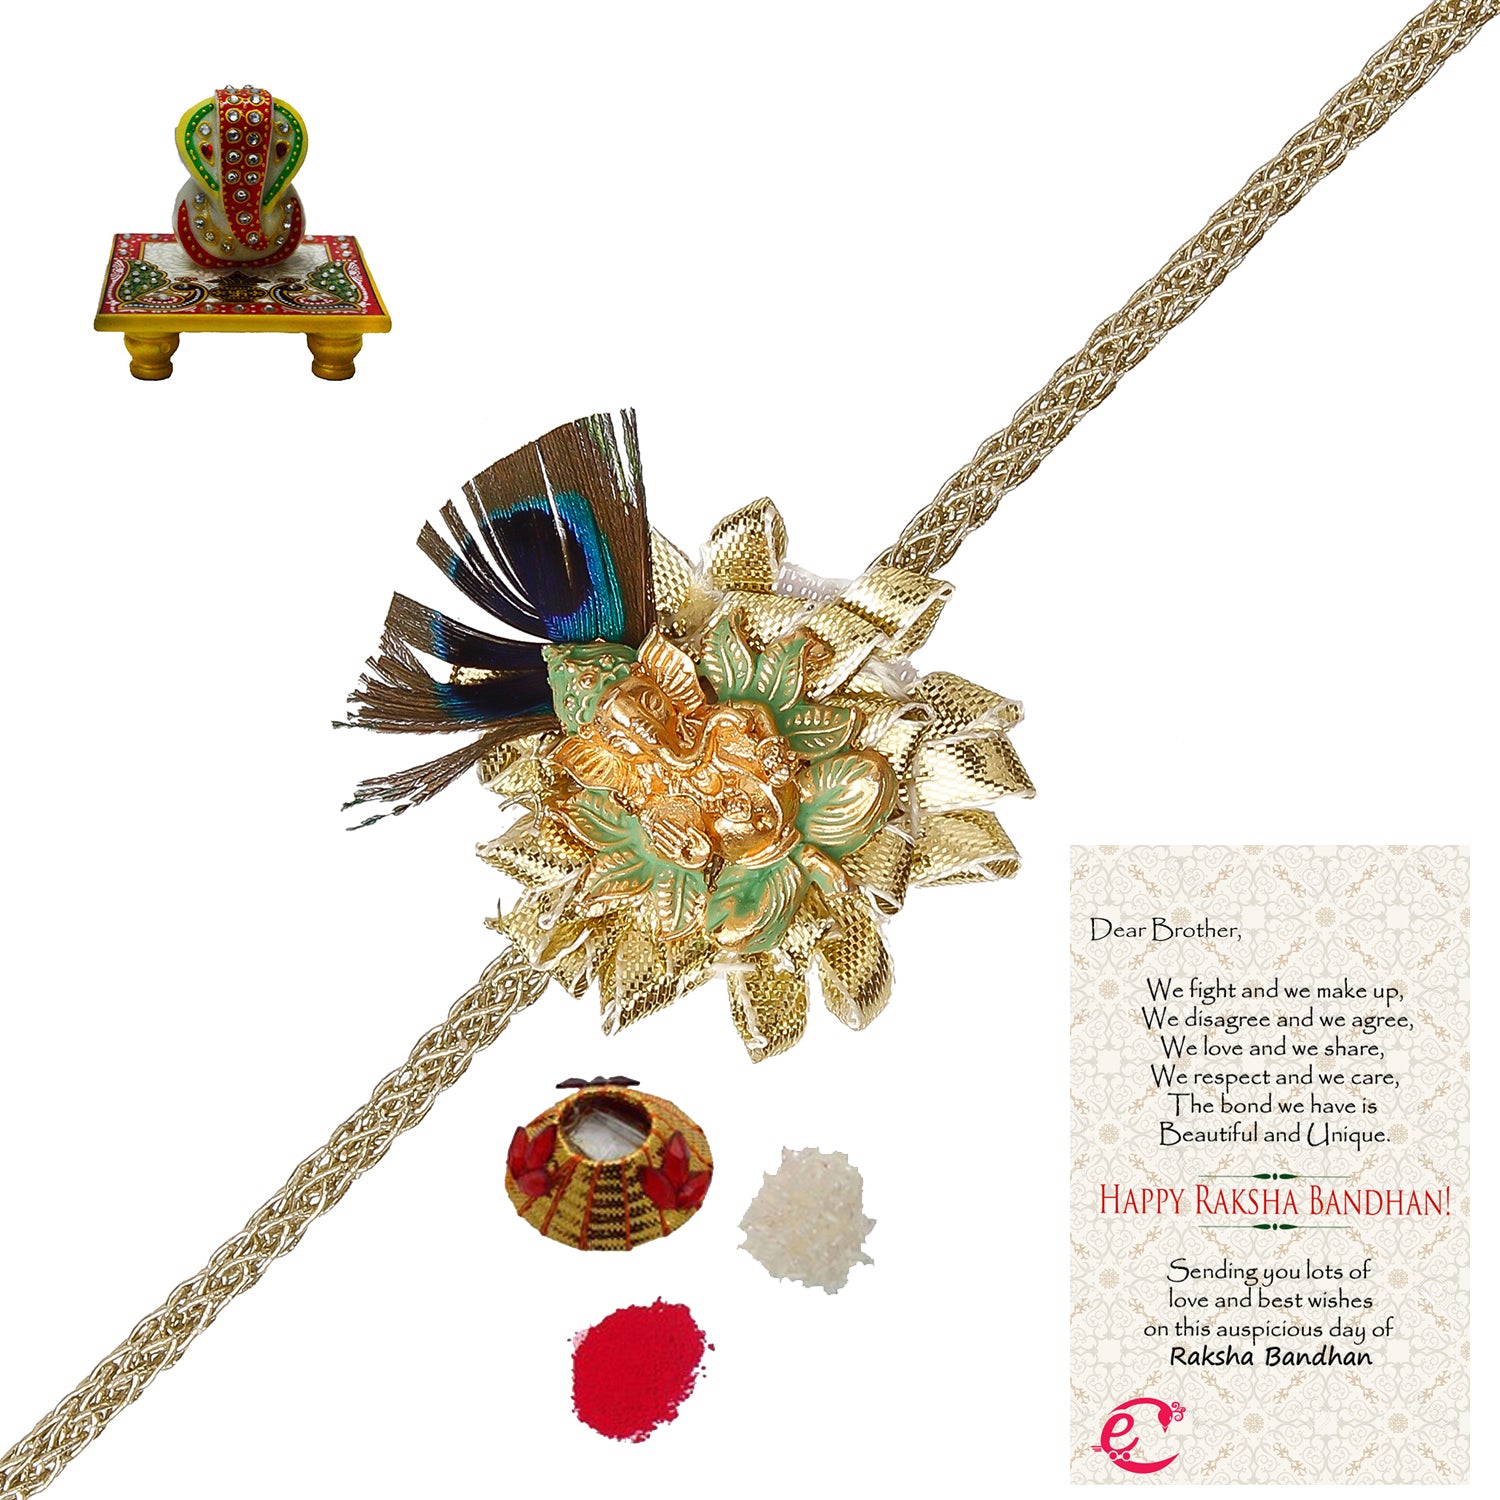 Designer Ganesha Mor Pankh Rakhi with Lord Ganesha on Marble Chowki and Roli Tikka Matki, Best Wishes Greeting Card